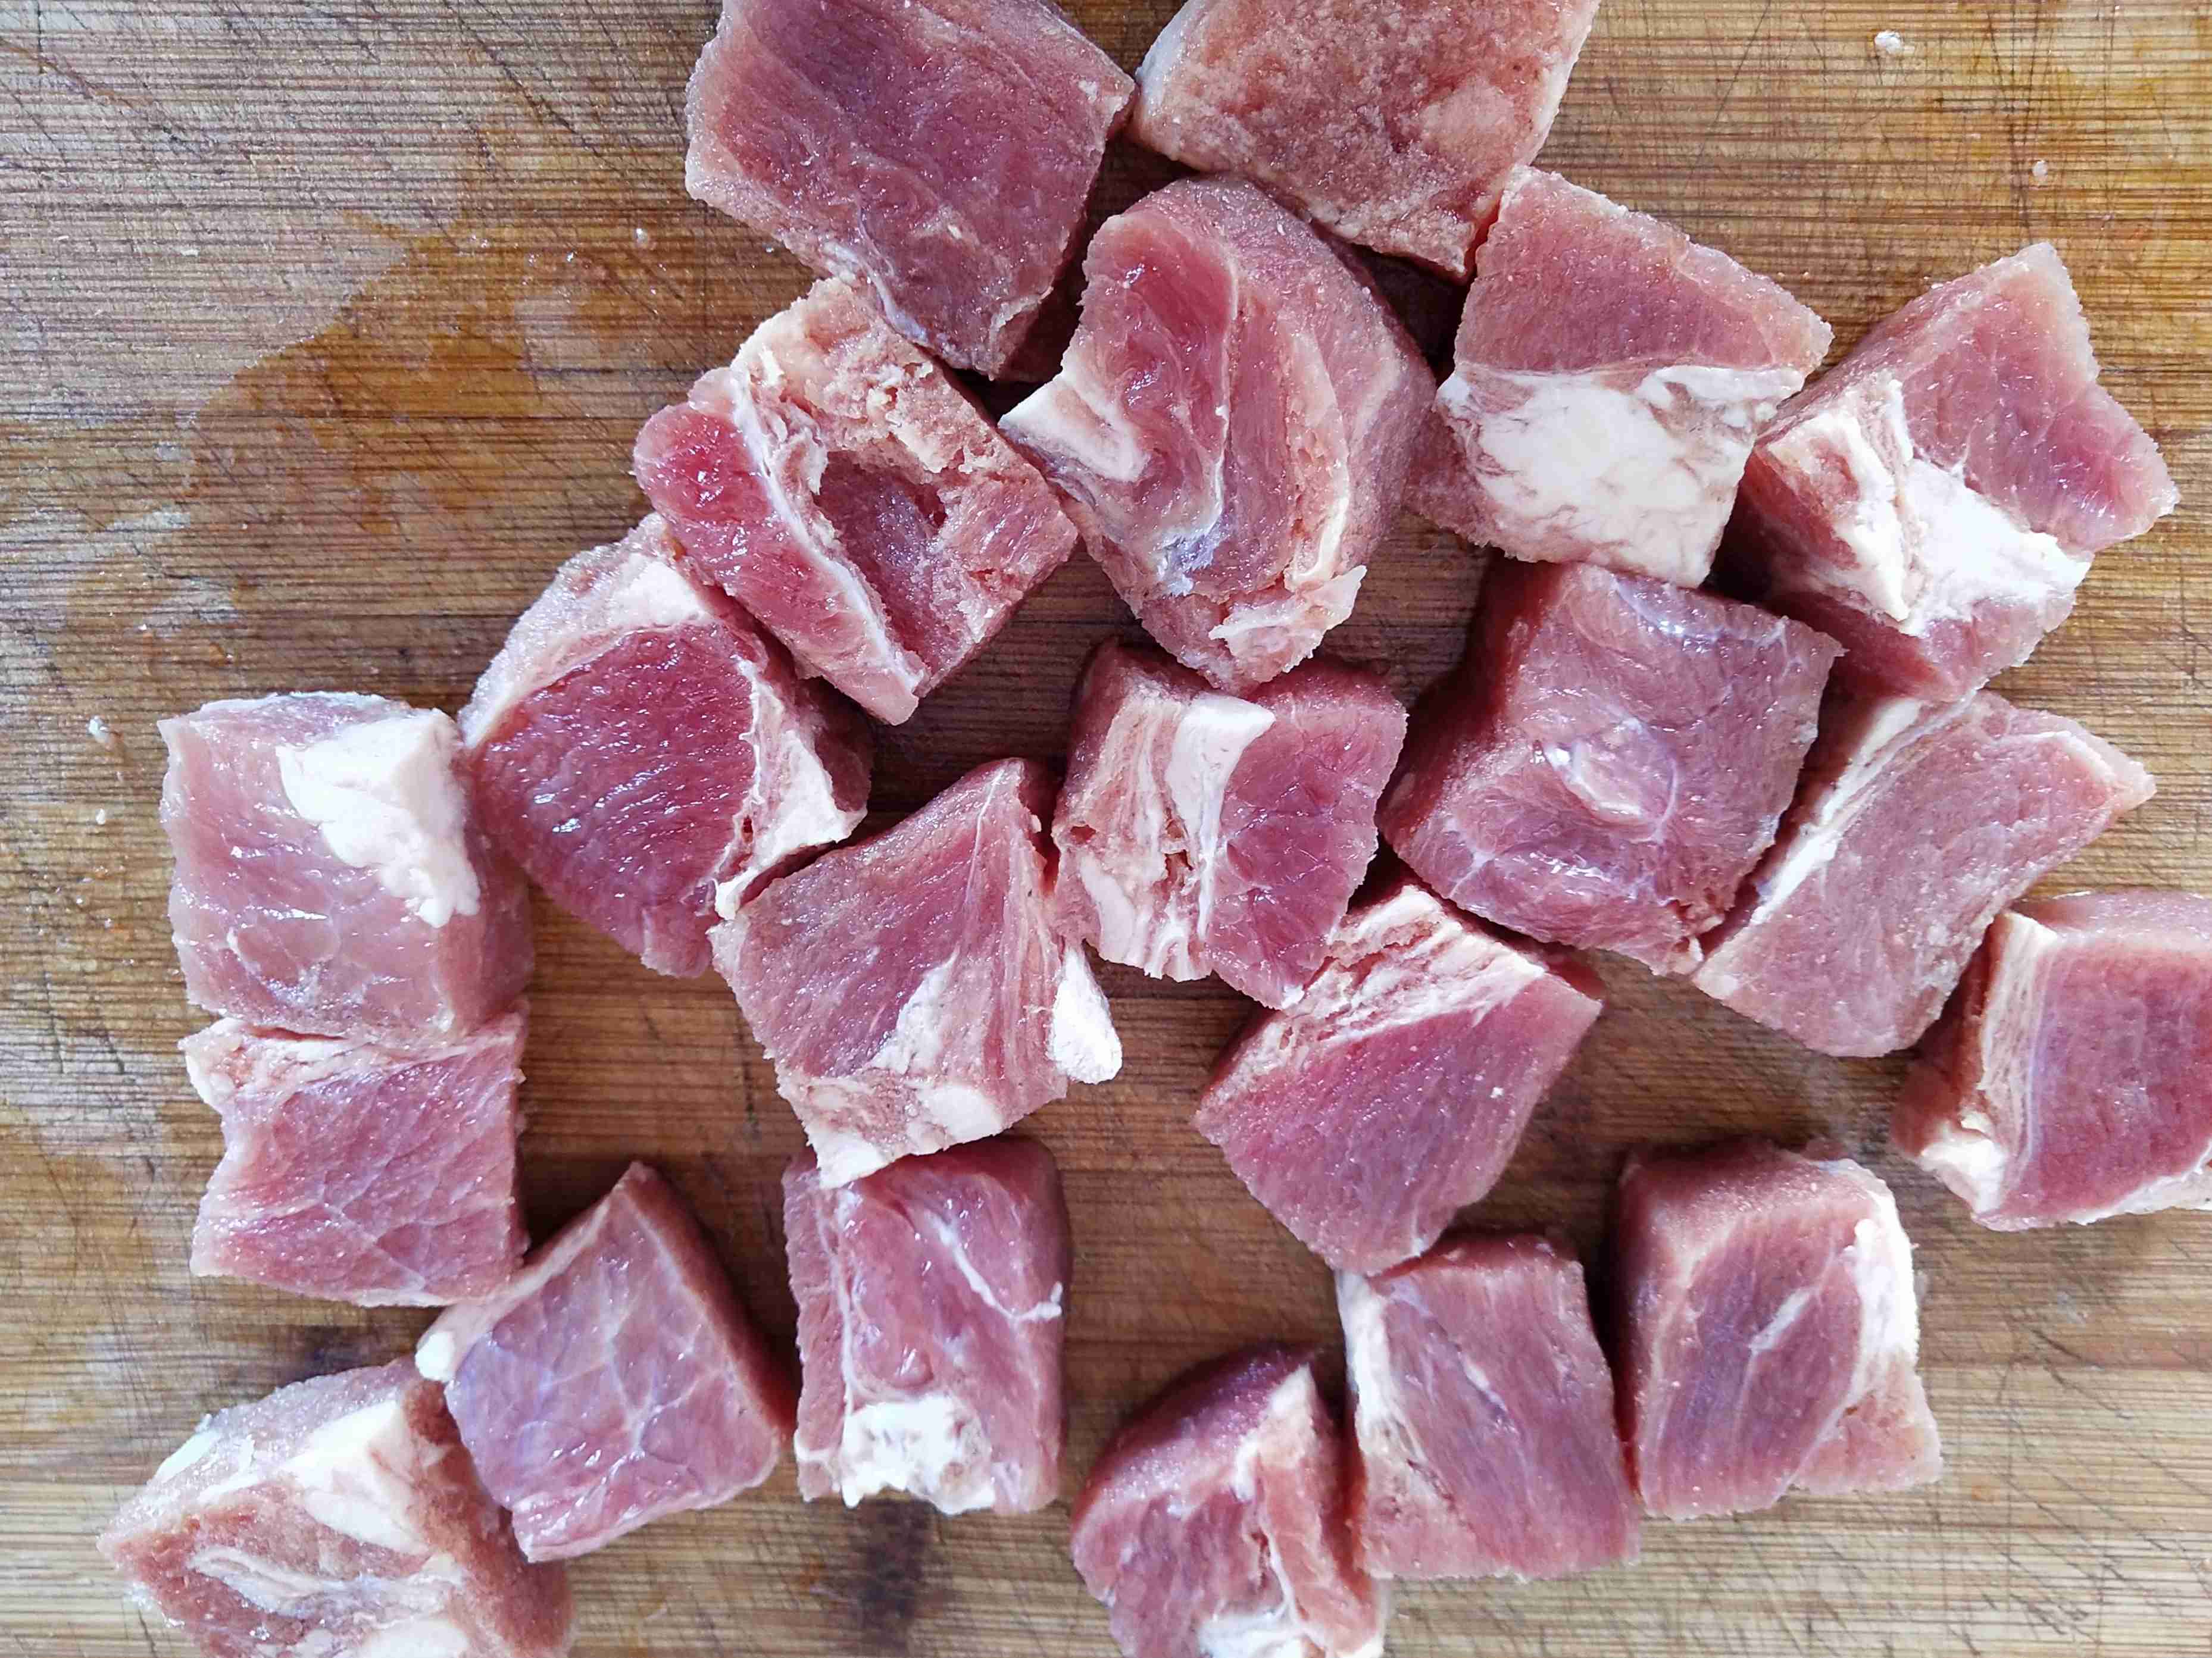 Fish Tofu Beef Skewers recipe